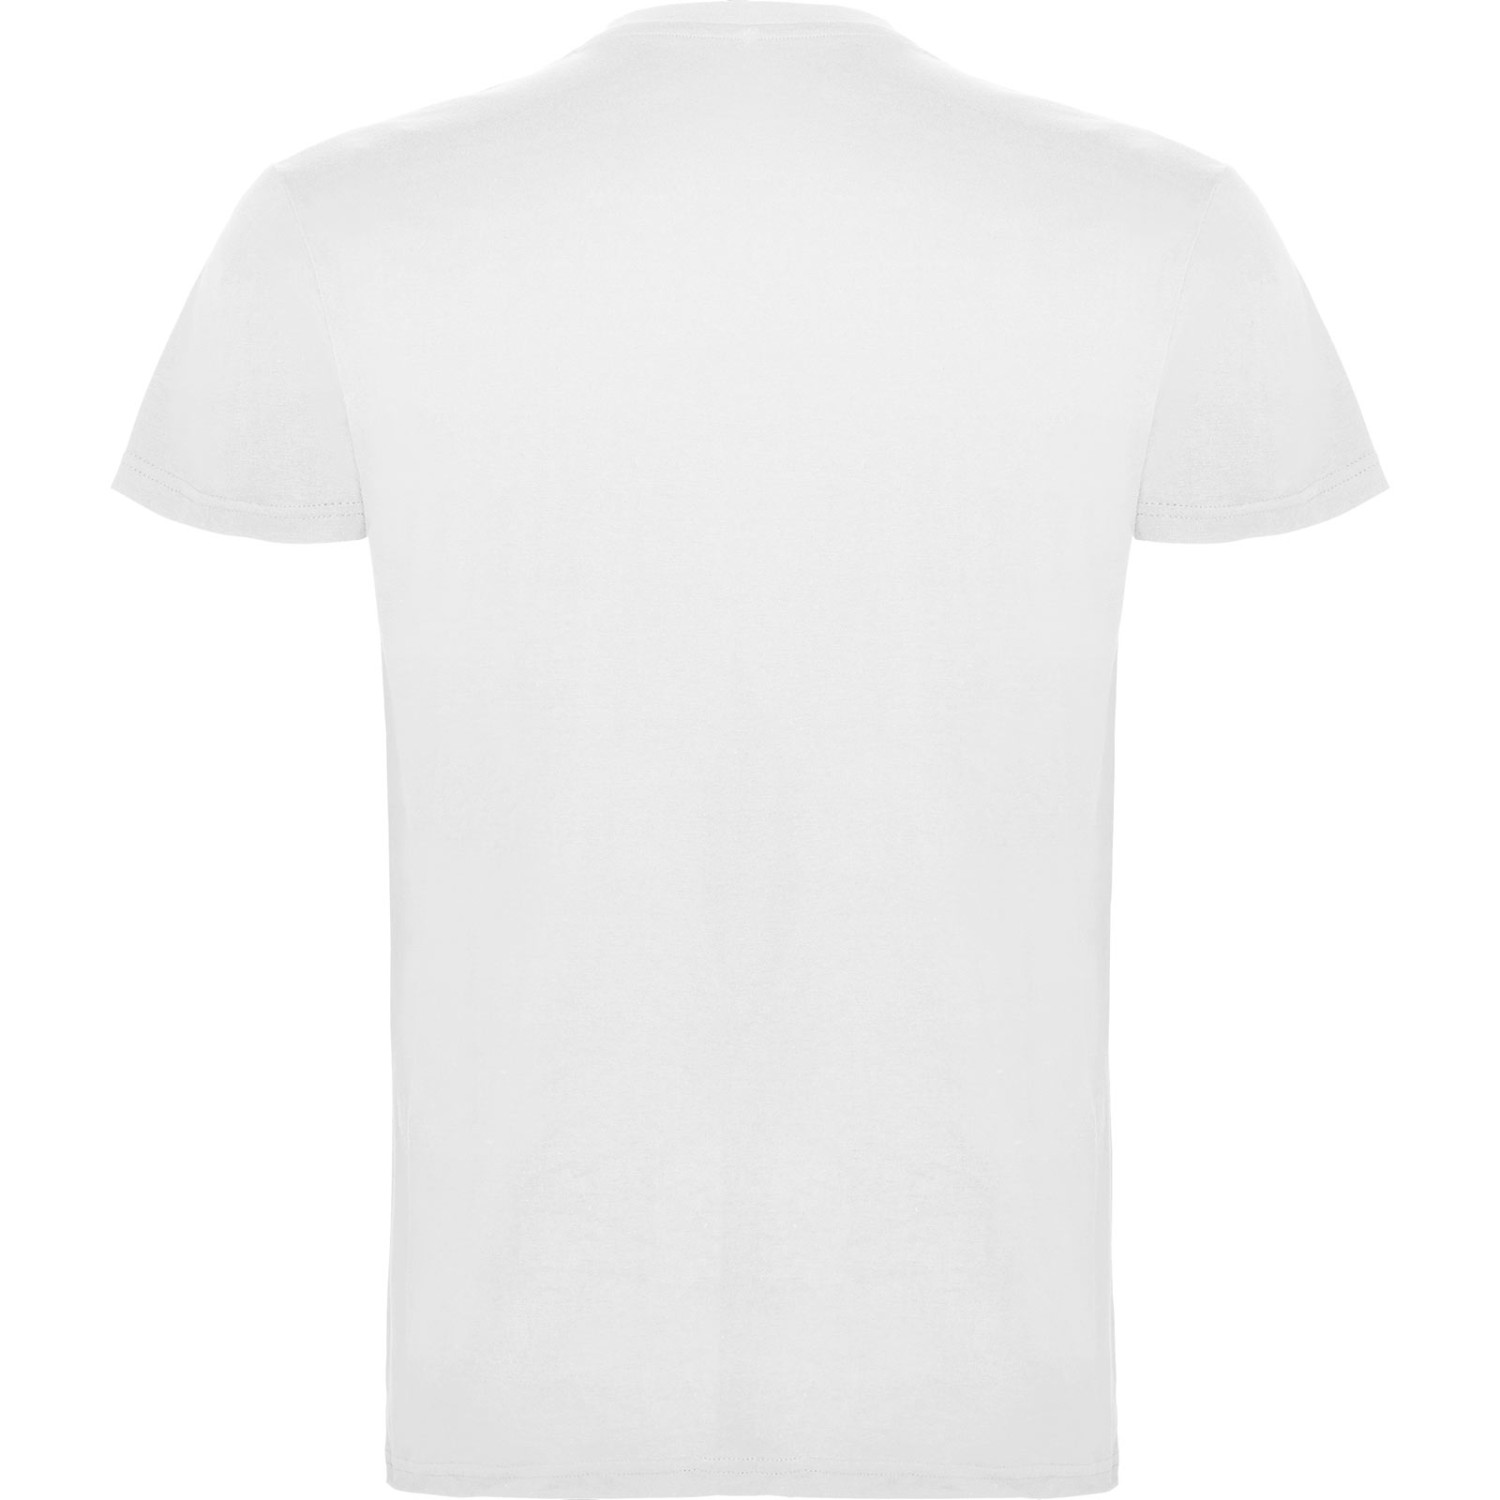 3. Foto T-Shirt BEAGLE Kurzarm Rundhals mit Druck (Farbe: weiß Größe: XL)